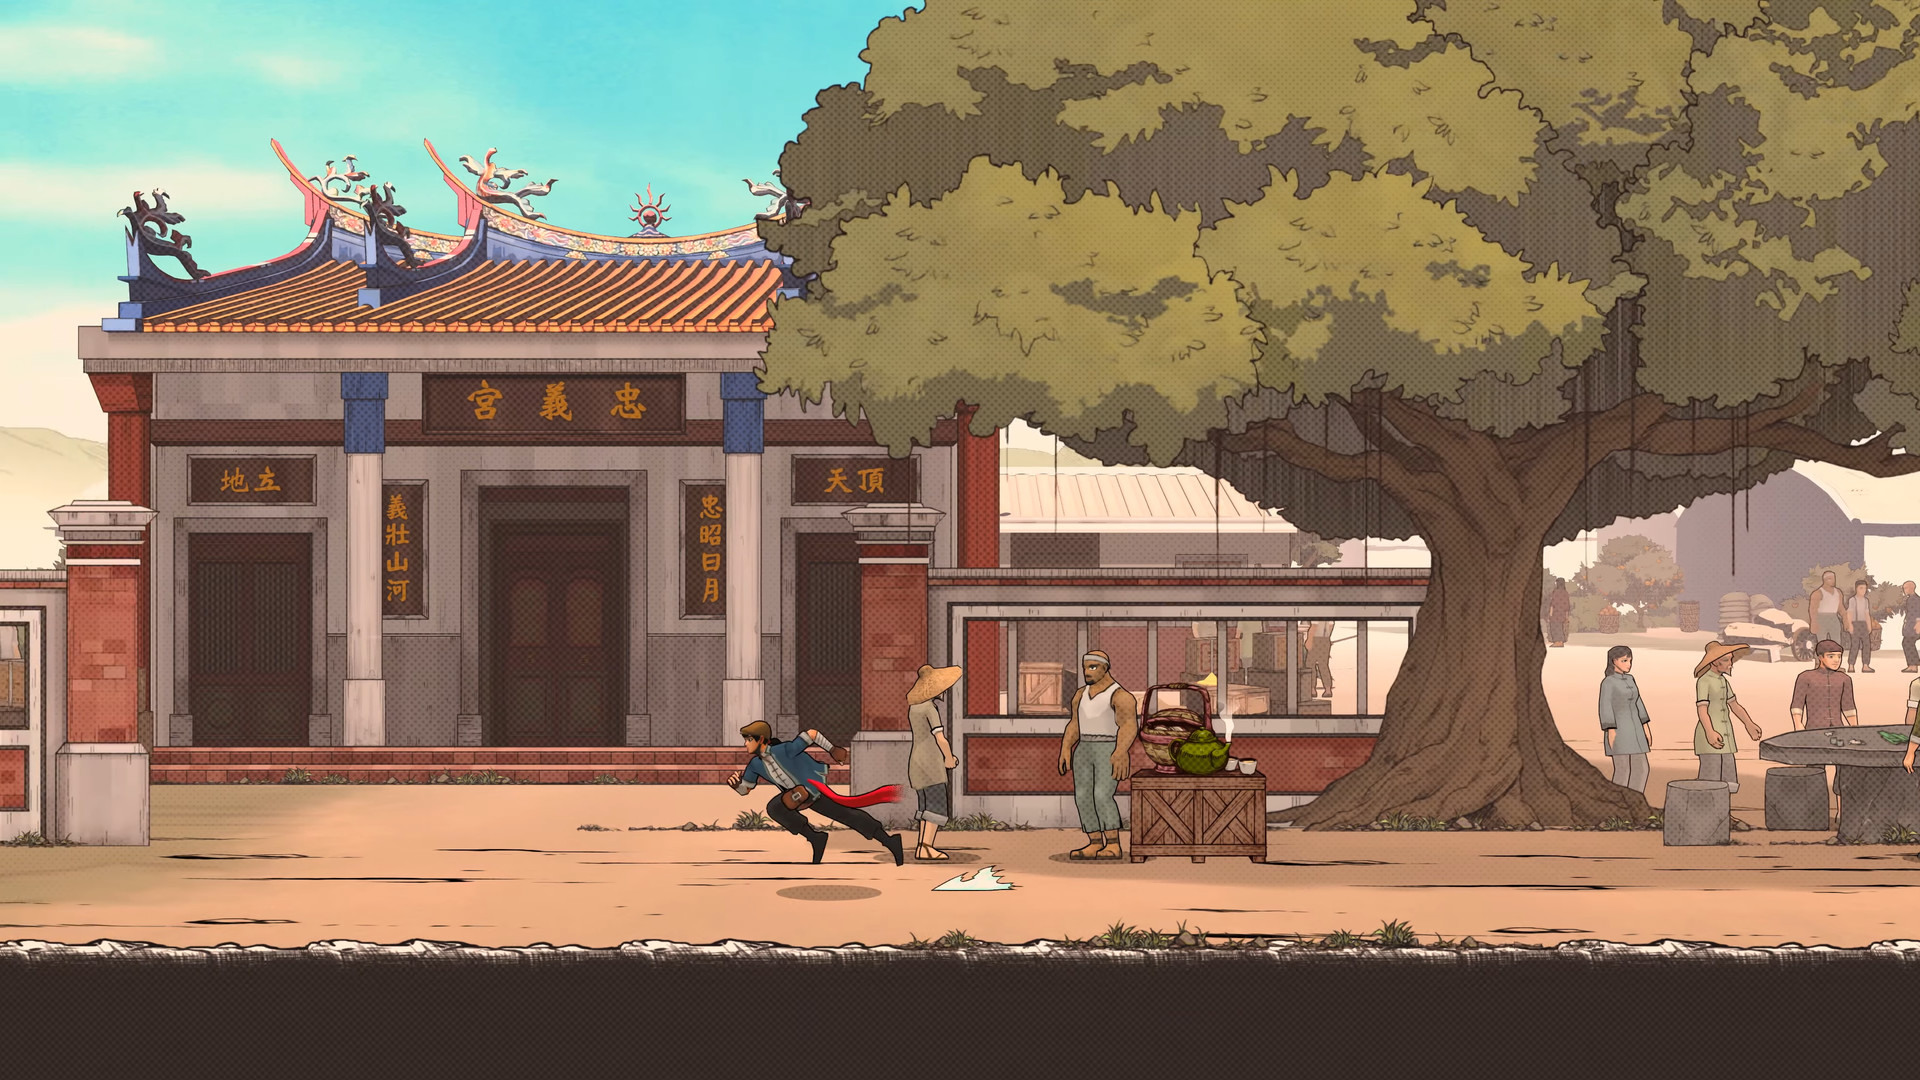 2D 动作横轴平台游戏《廖添丁 – 稀代凶贼之最期》展开 iOS 版预先注册插图6